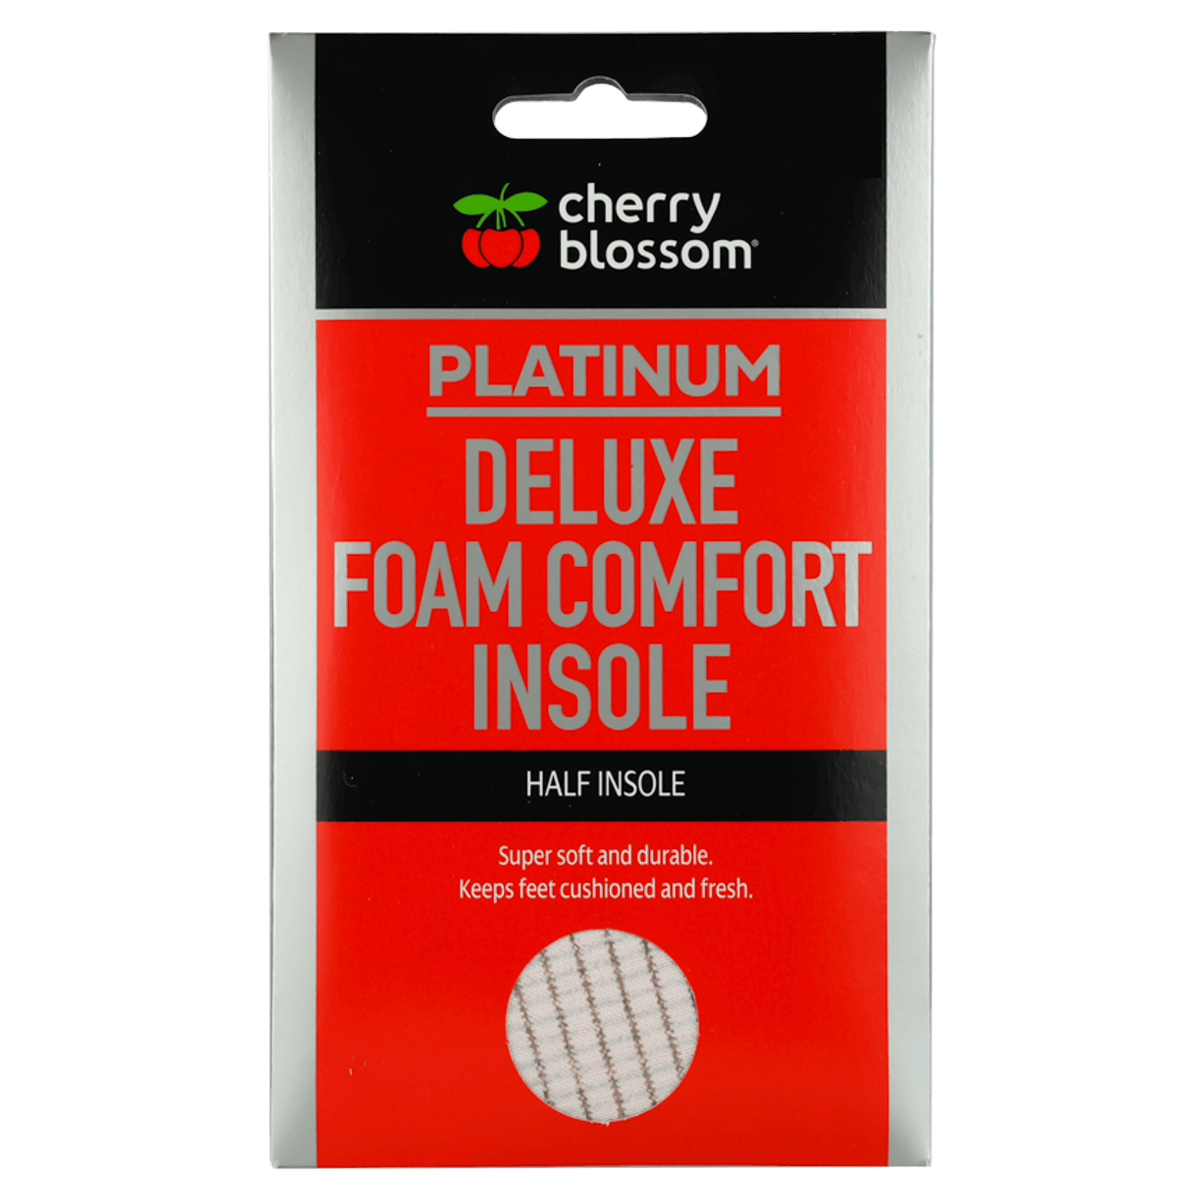 Deluxe Foam Comfort Insole Half